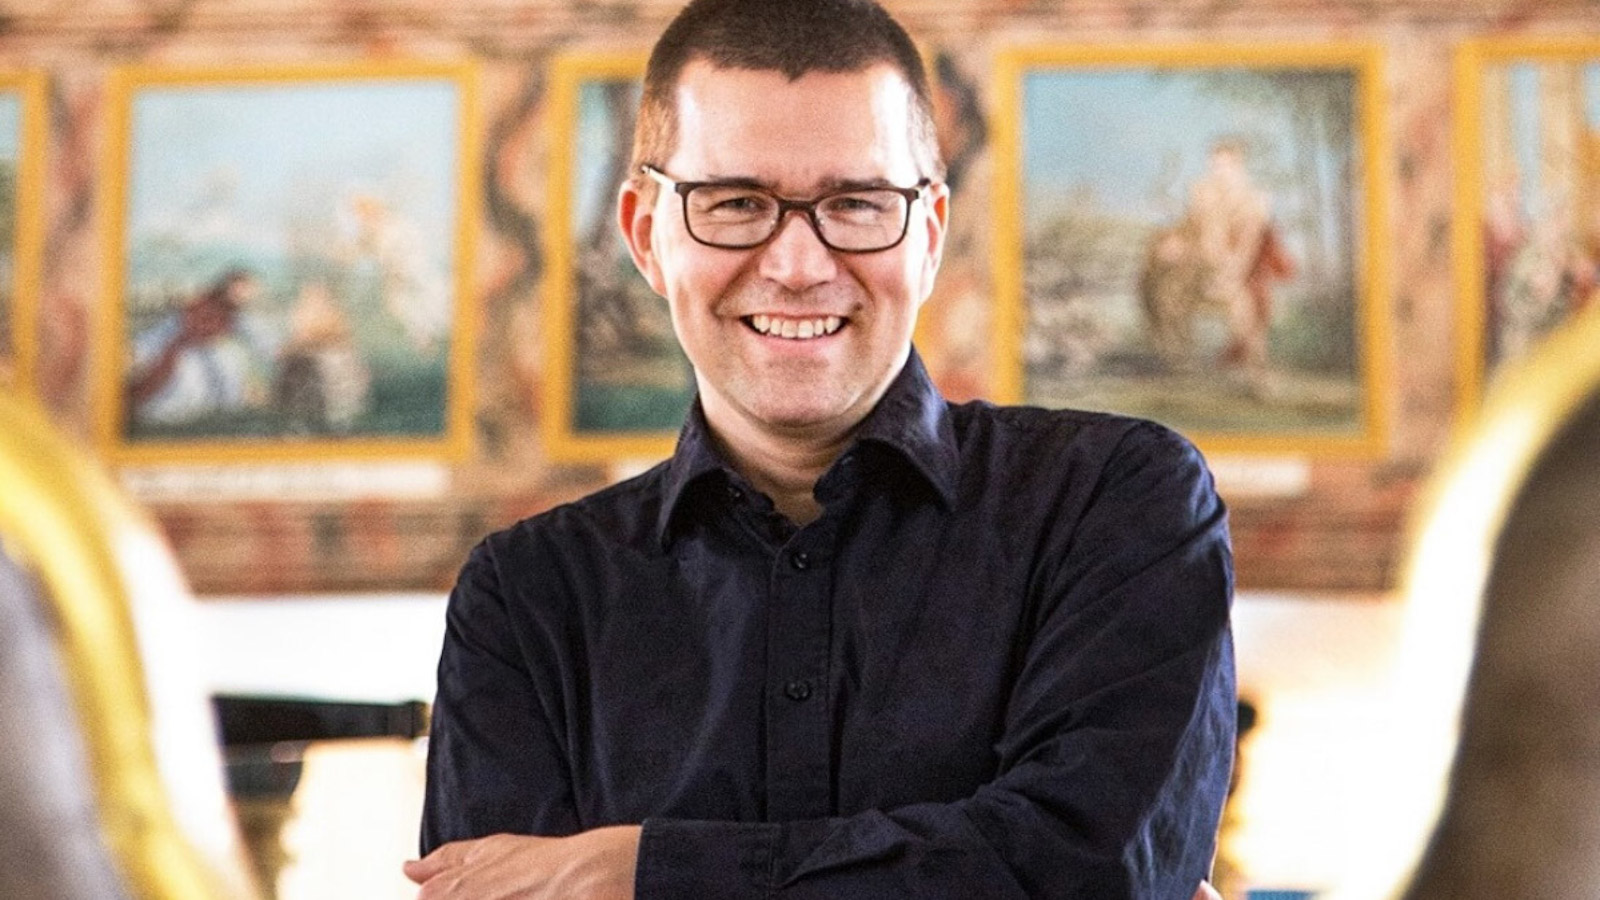 Piano Espoo-festivaalin 2021 taiteellisena johtajana toimii viimeistä kauttaan pianotaiteilija Paavali Jumppanen. 